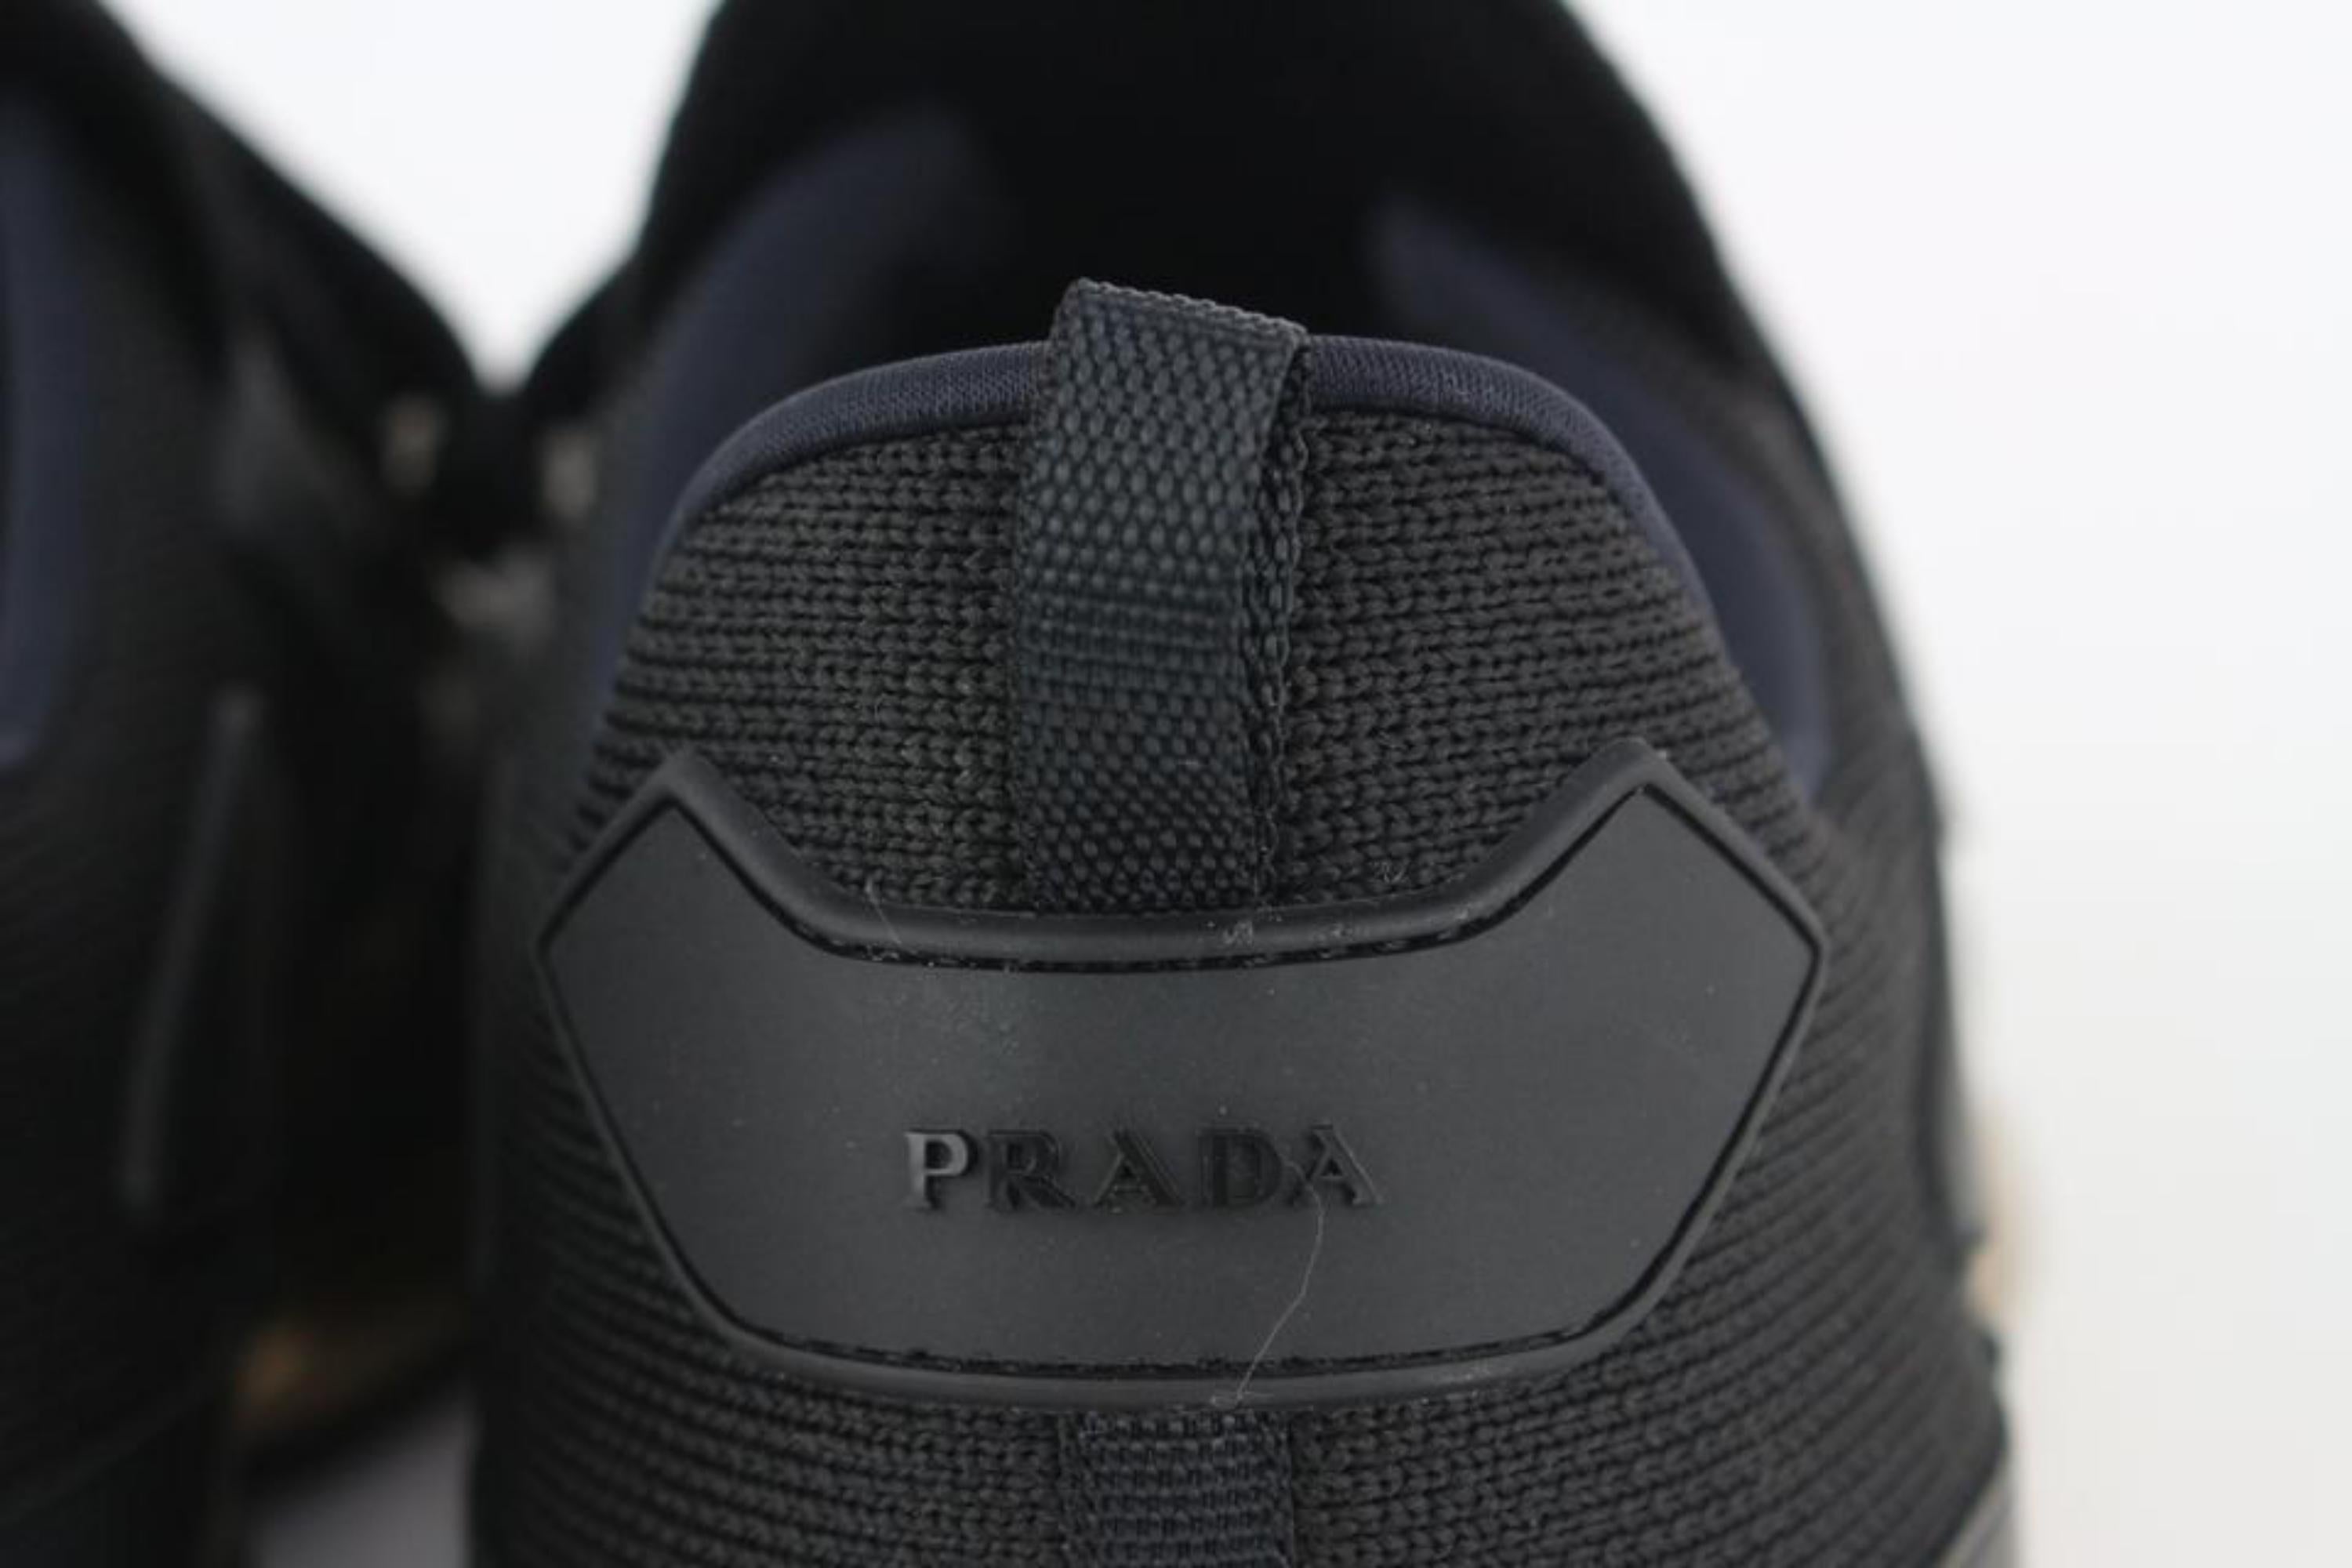 Prada Men's 11 20g064 Black x Gold Cloudbust Sneakers 1116p48 2